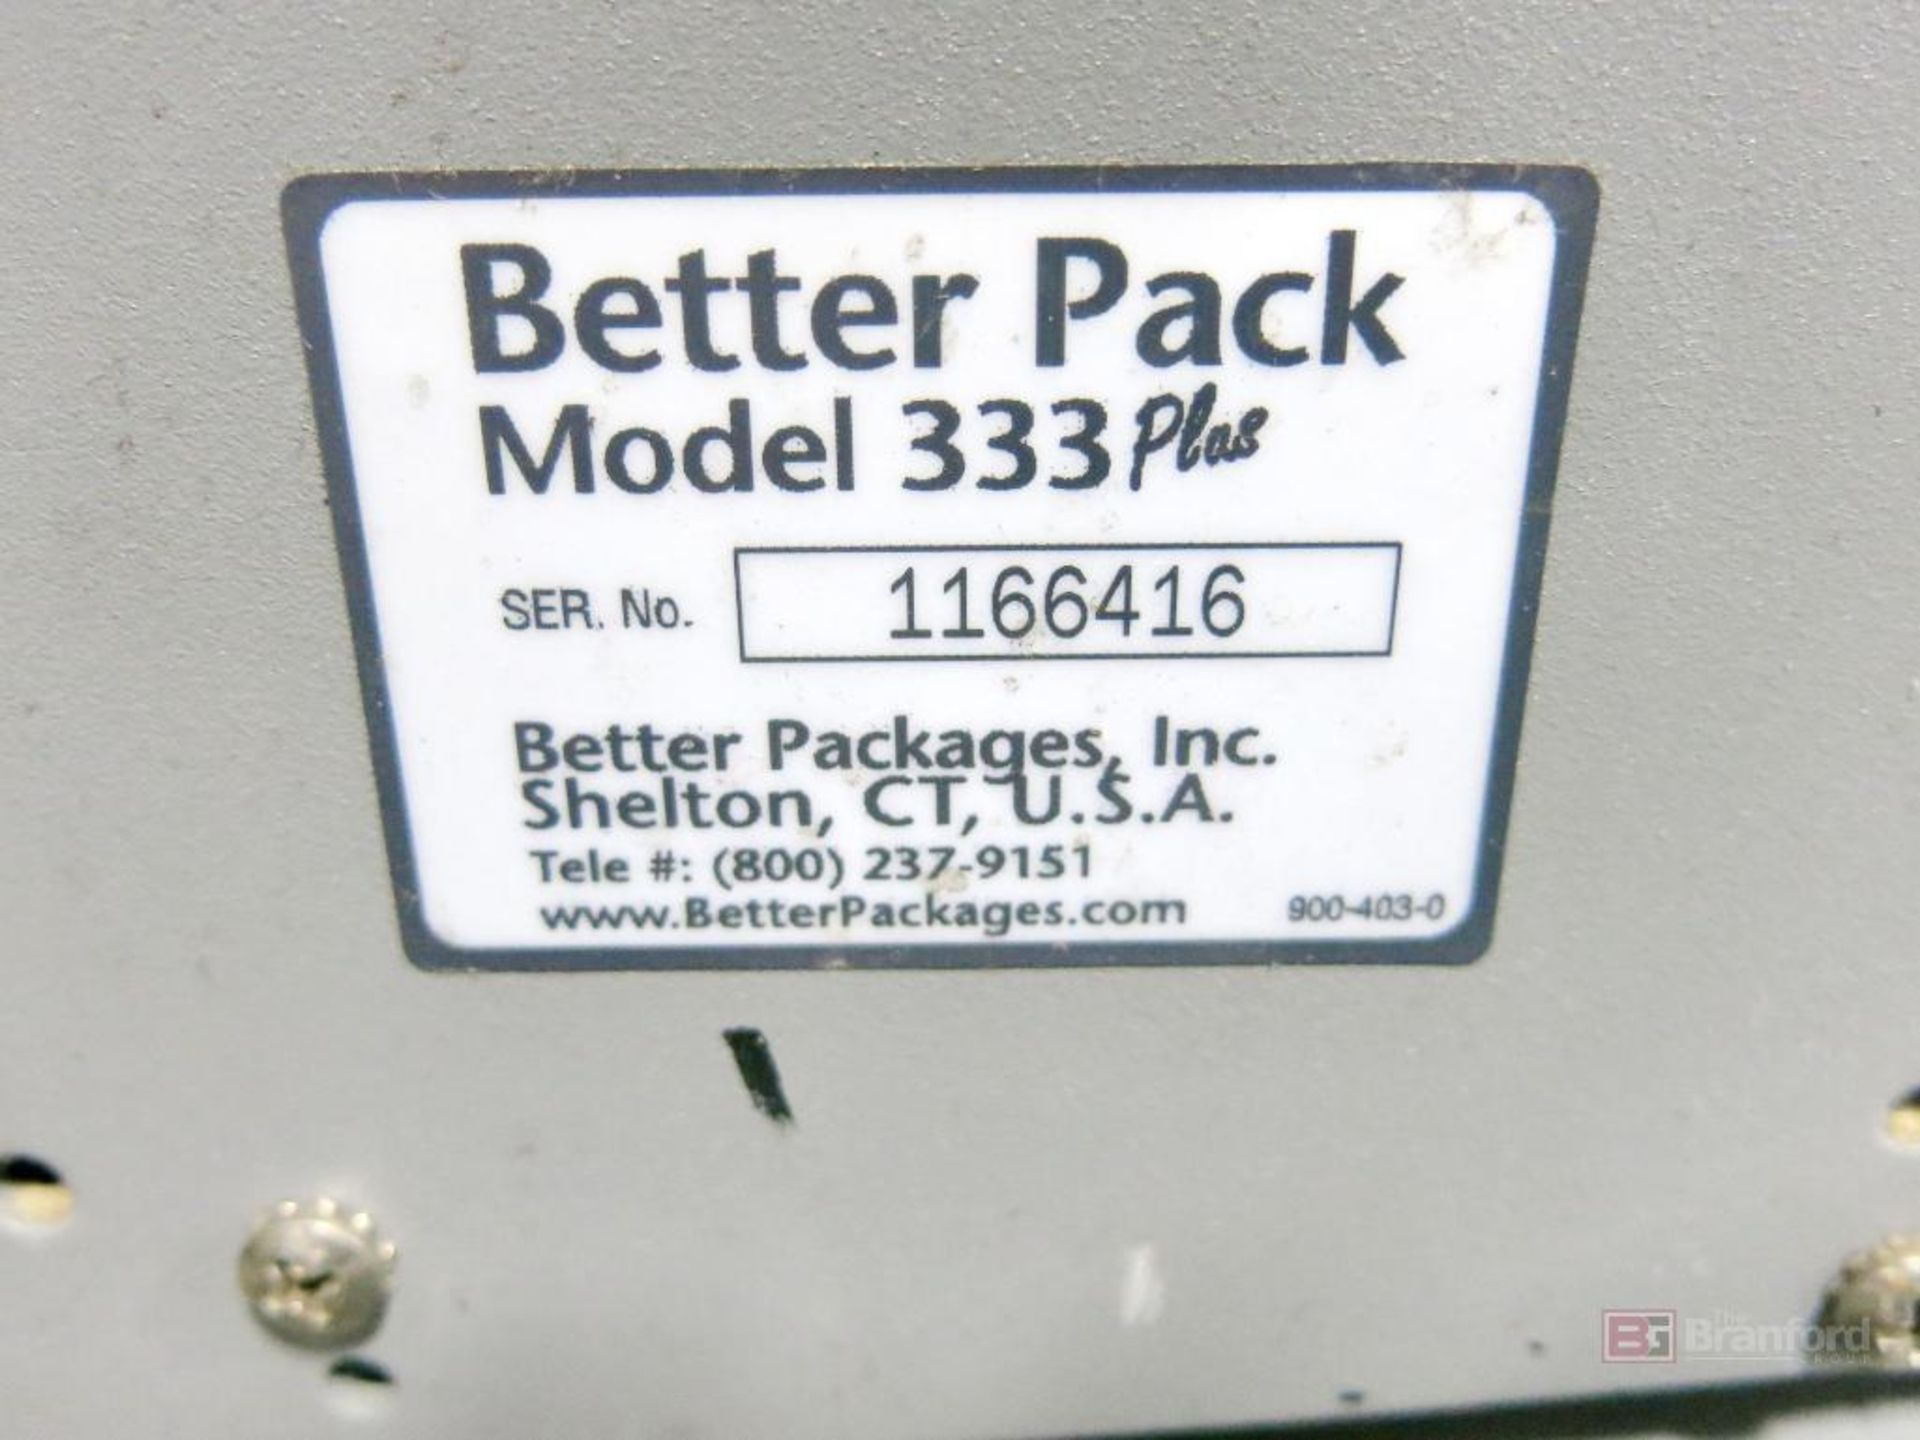 Better Pack Model 333 Plus Fiberglass Reinforced Tape Dispenser - Image 2 of 2